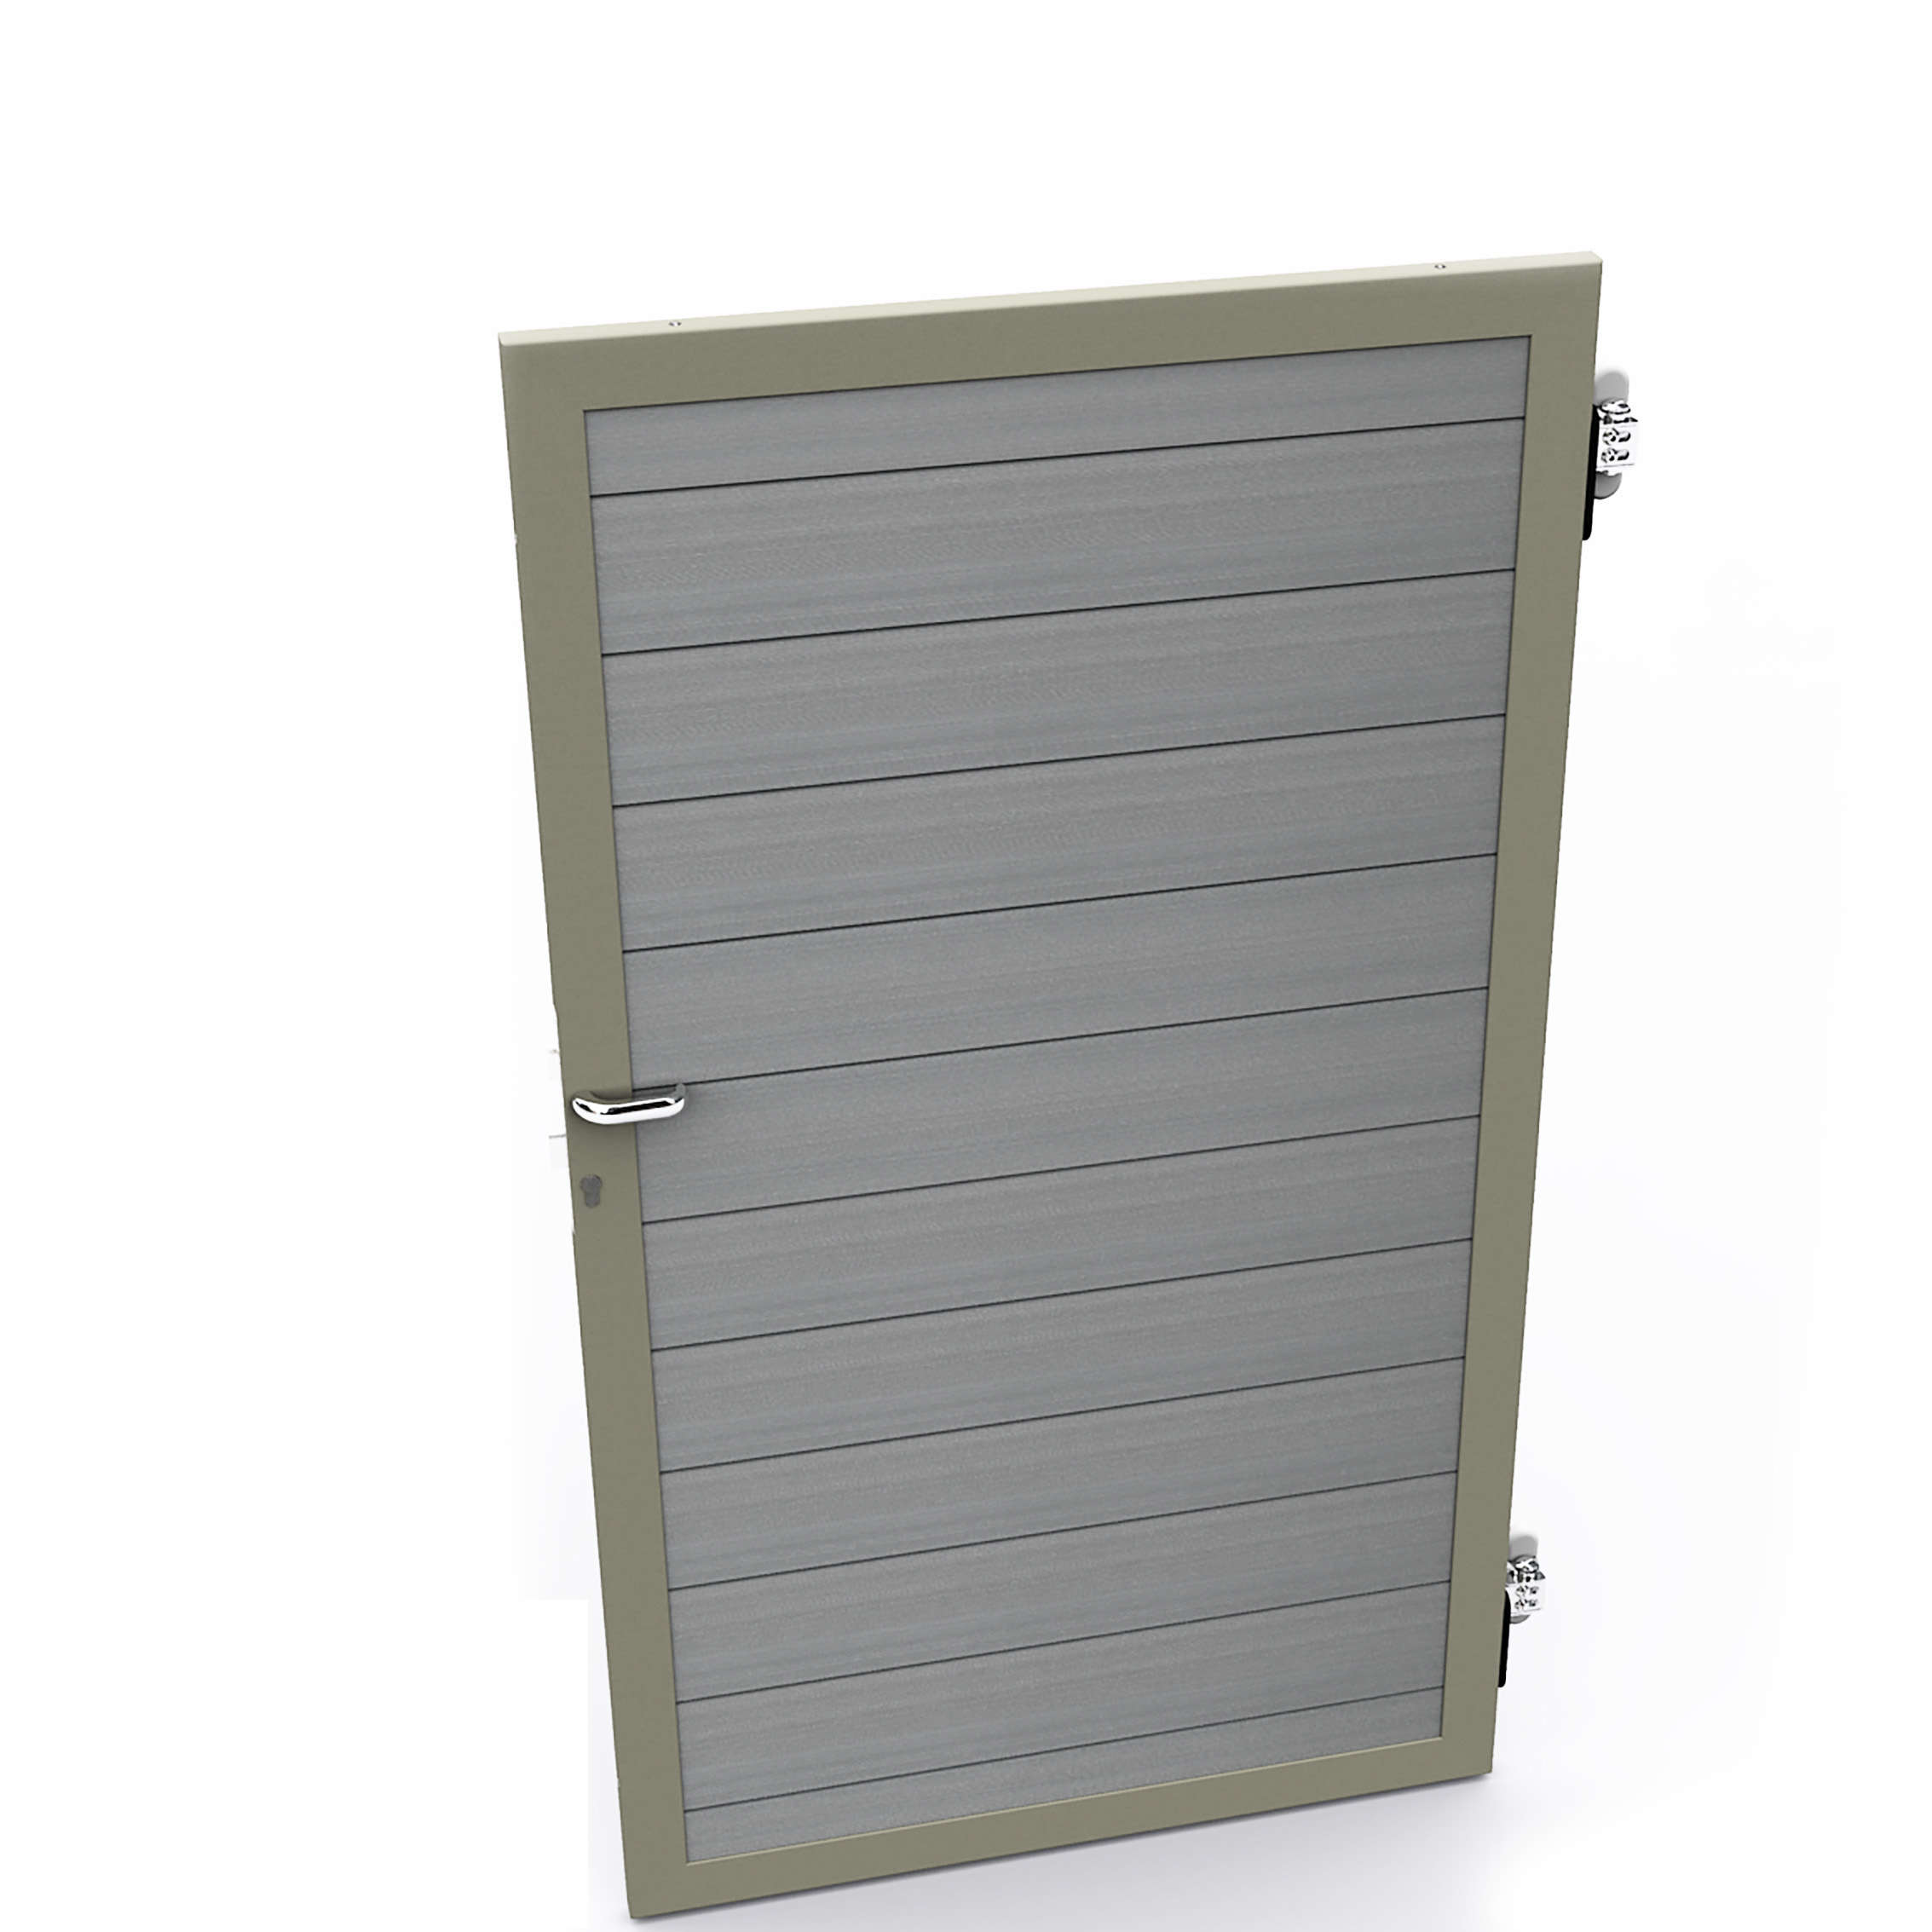 Duofuse | Composiet poort/deur | 180cm | Stone Grey